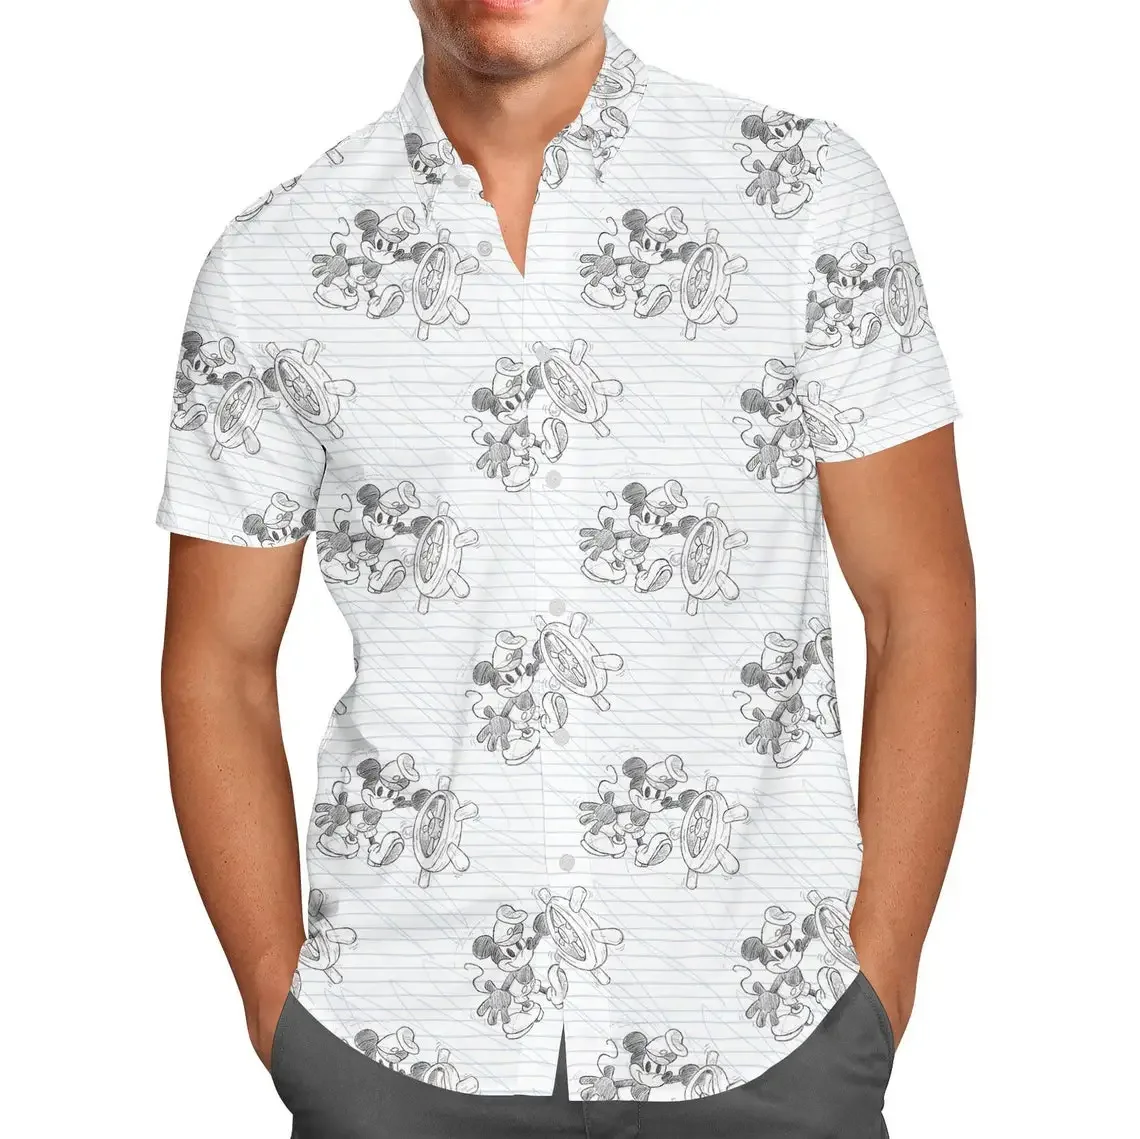 

Гавайская рубашка с рисунком Микки Мауса из мультфильма «Эскиз», мужская рубашка с короткими рукавами, на пуговицах, в стиле Диснея, модная пляжная футболка